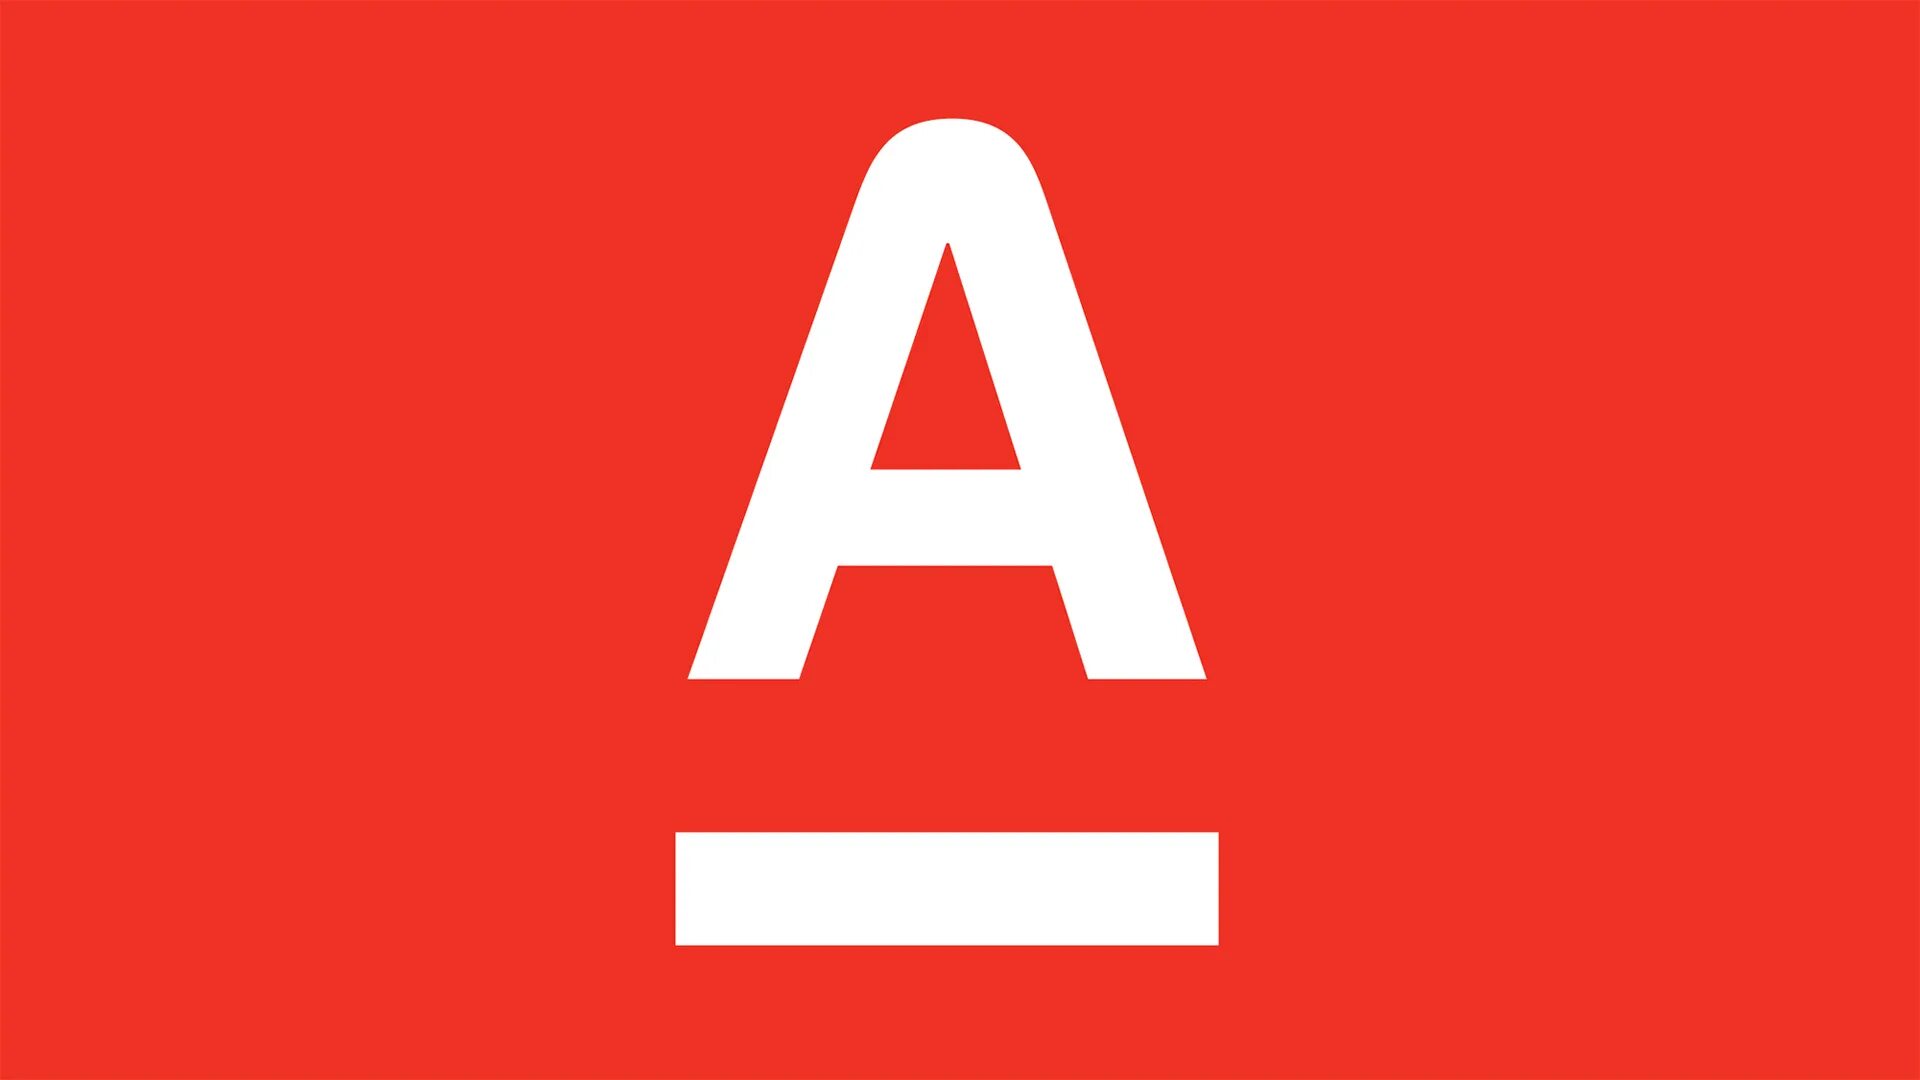 Https alfabank apps. Альфа банк. Логотип Alfa Bank. Альфа банк лого вектор. Символ Альфа банка.